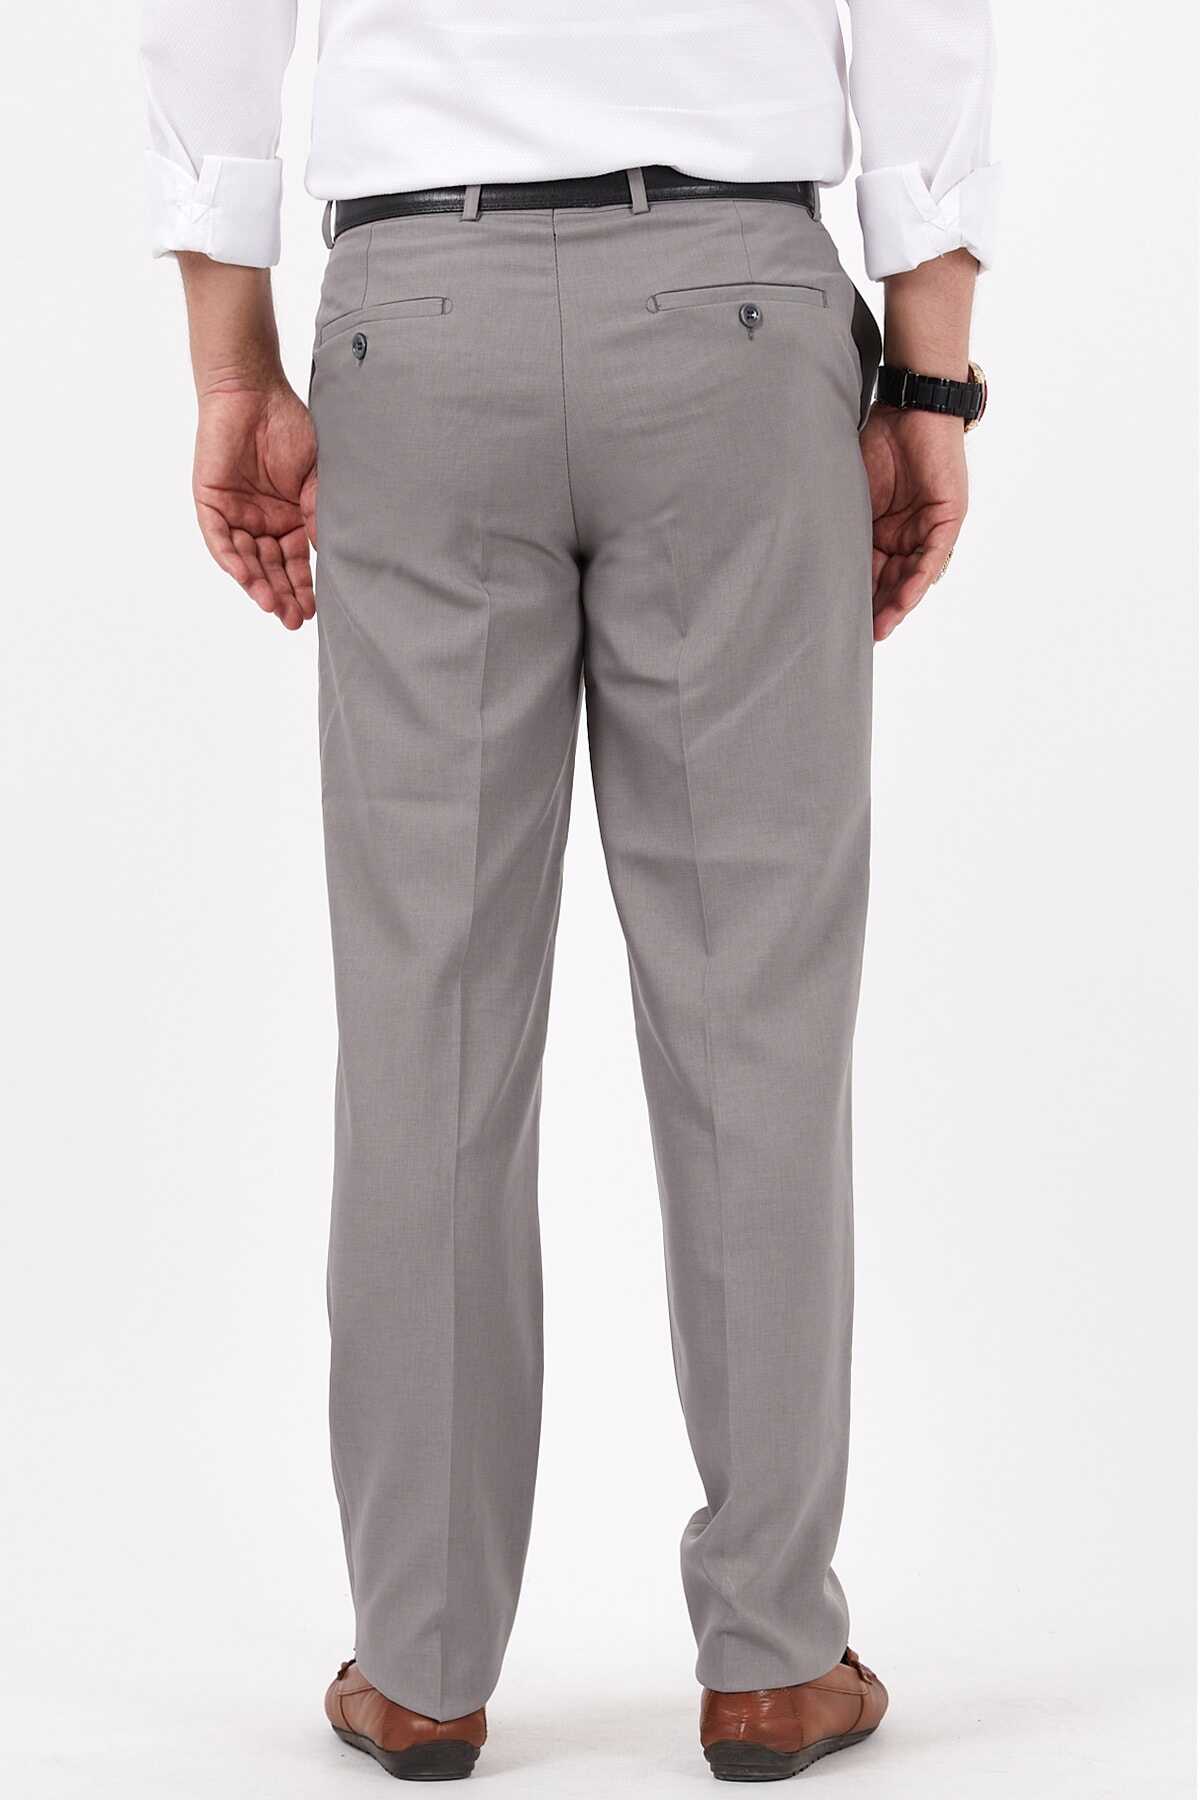 شلوار پارچه ای سایز بزرگ جیب دار مردانه طوسی برند Bölünmez 